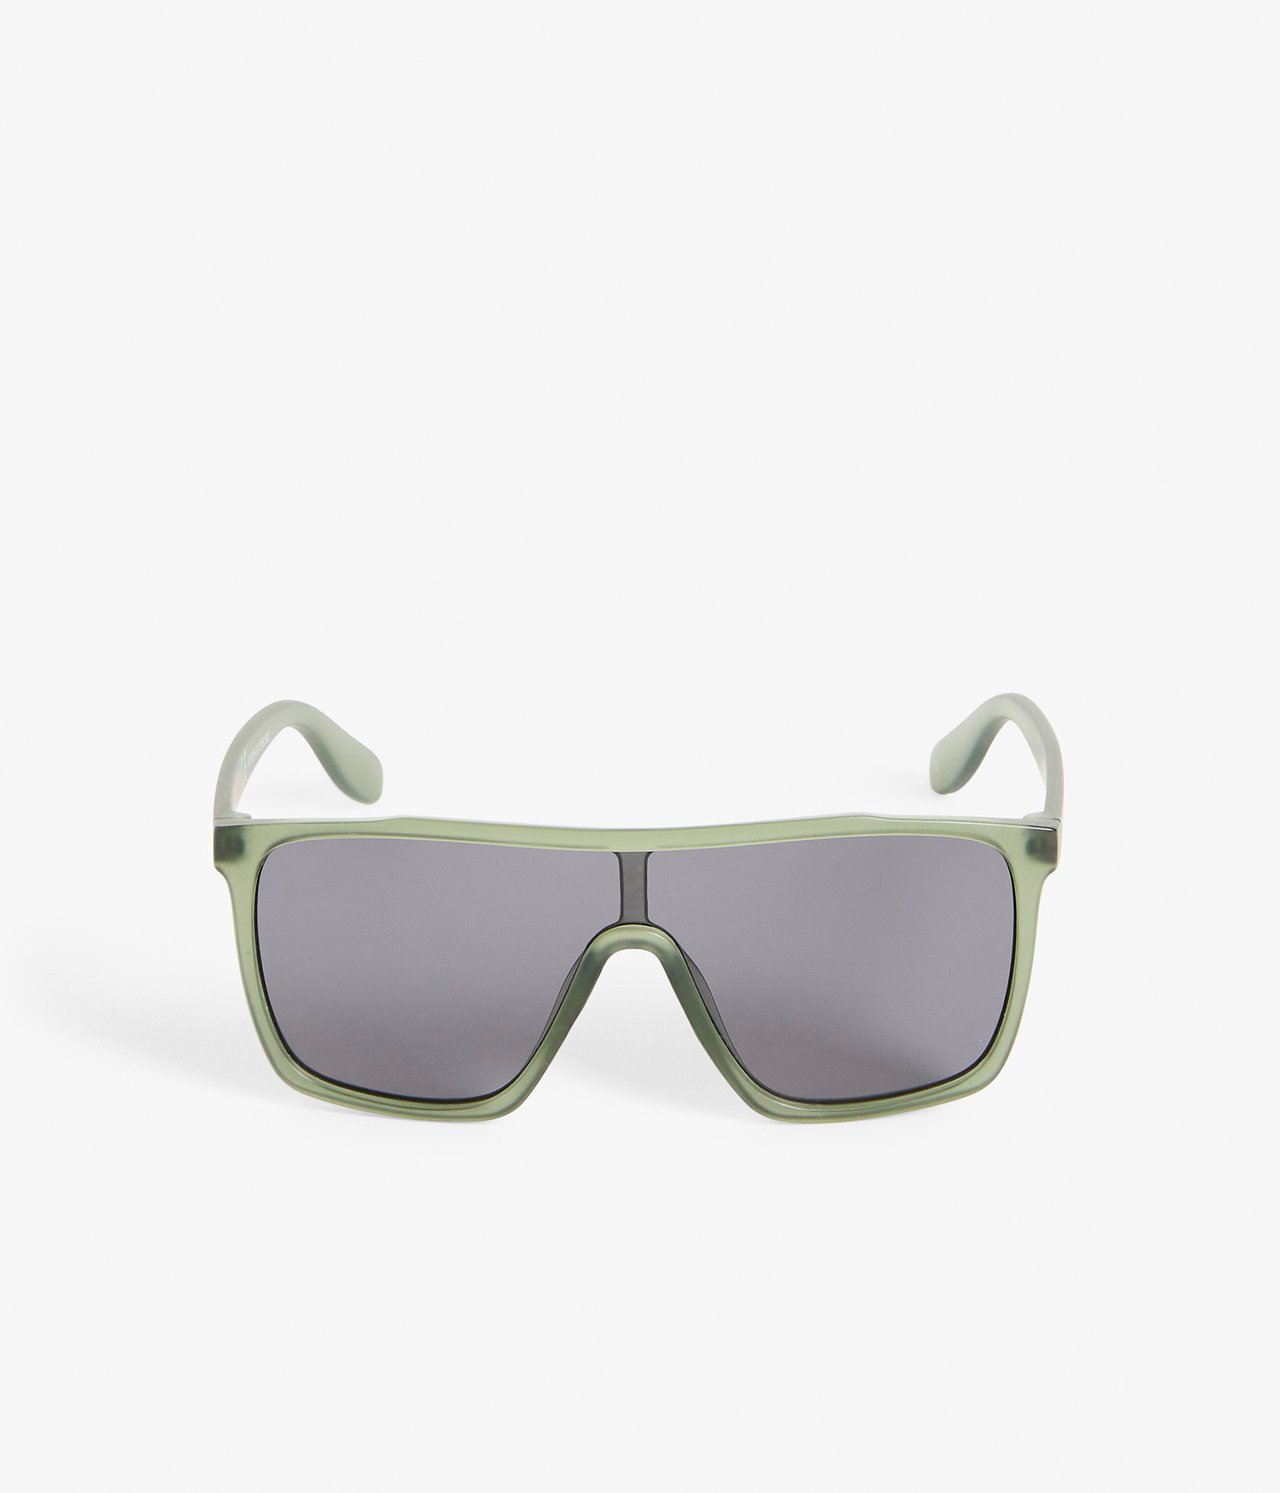 Solbriller barn - Grønn - 1